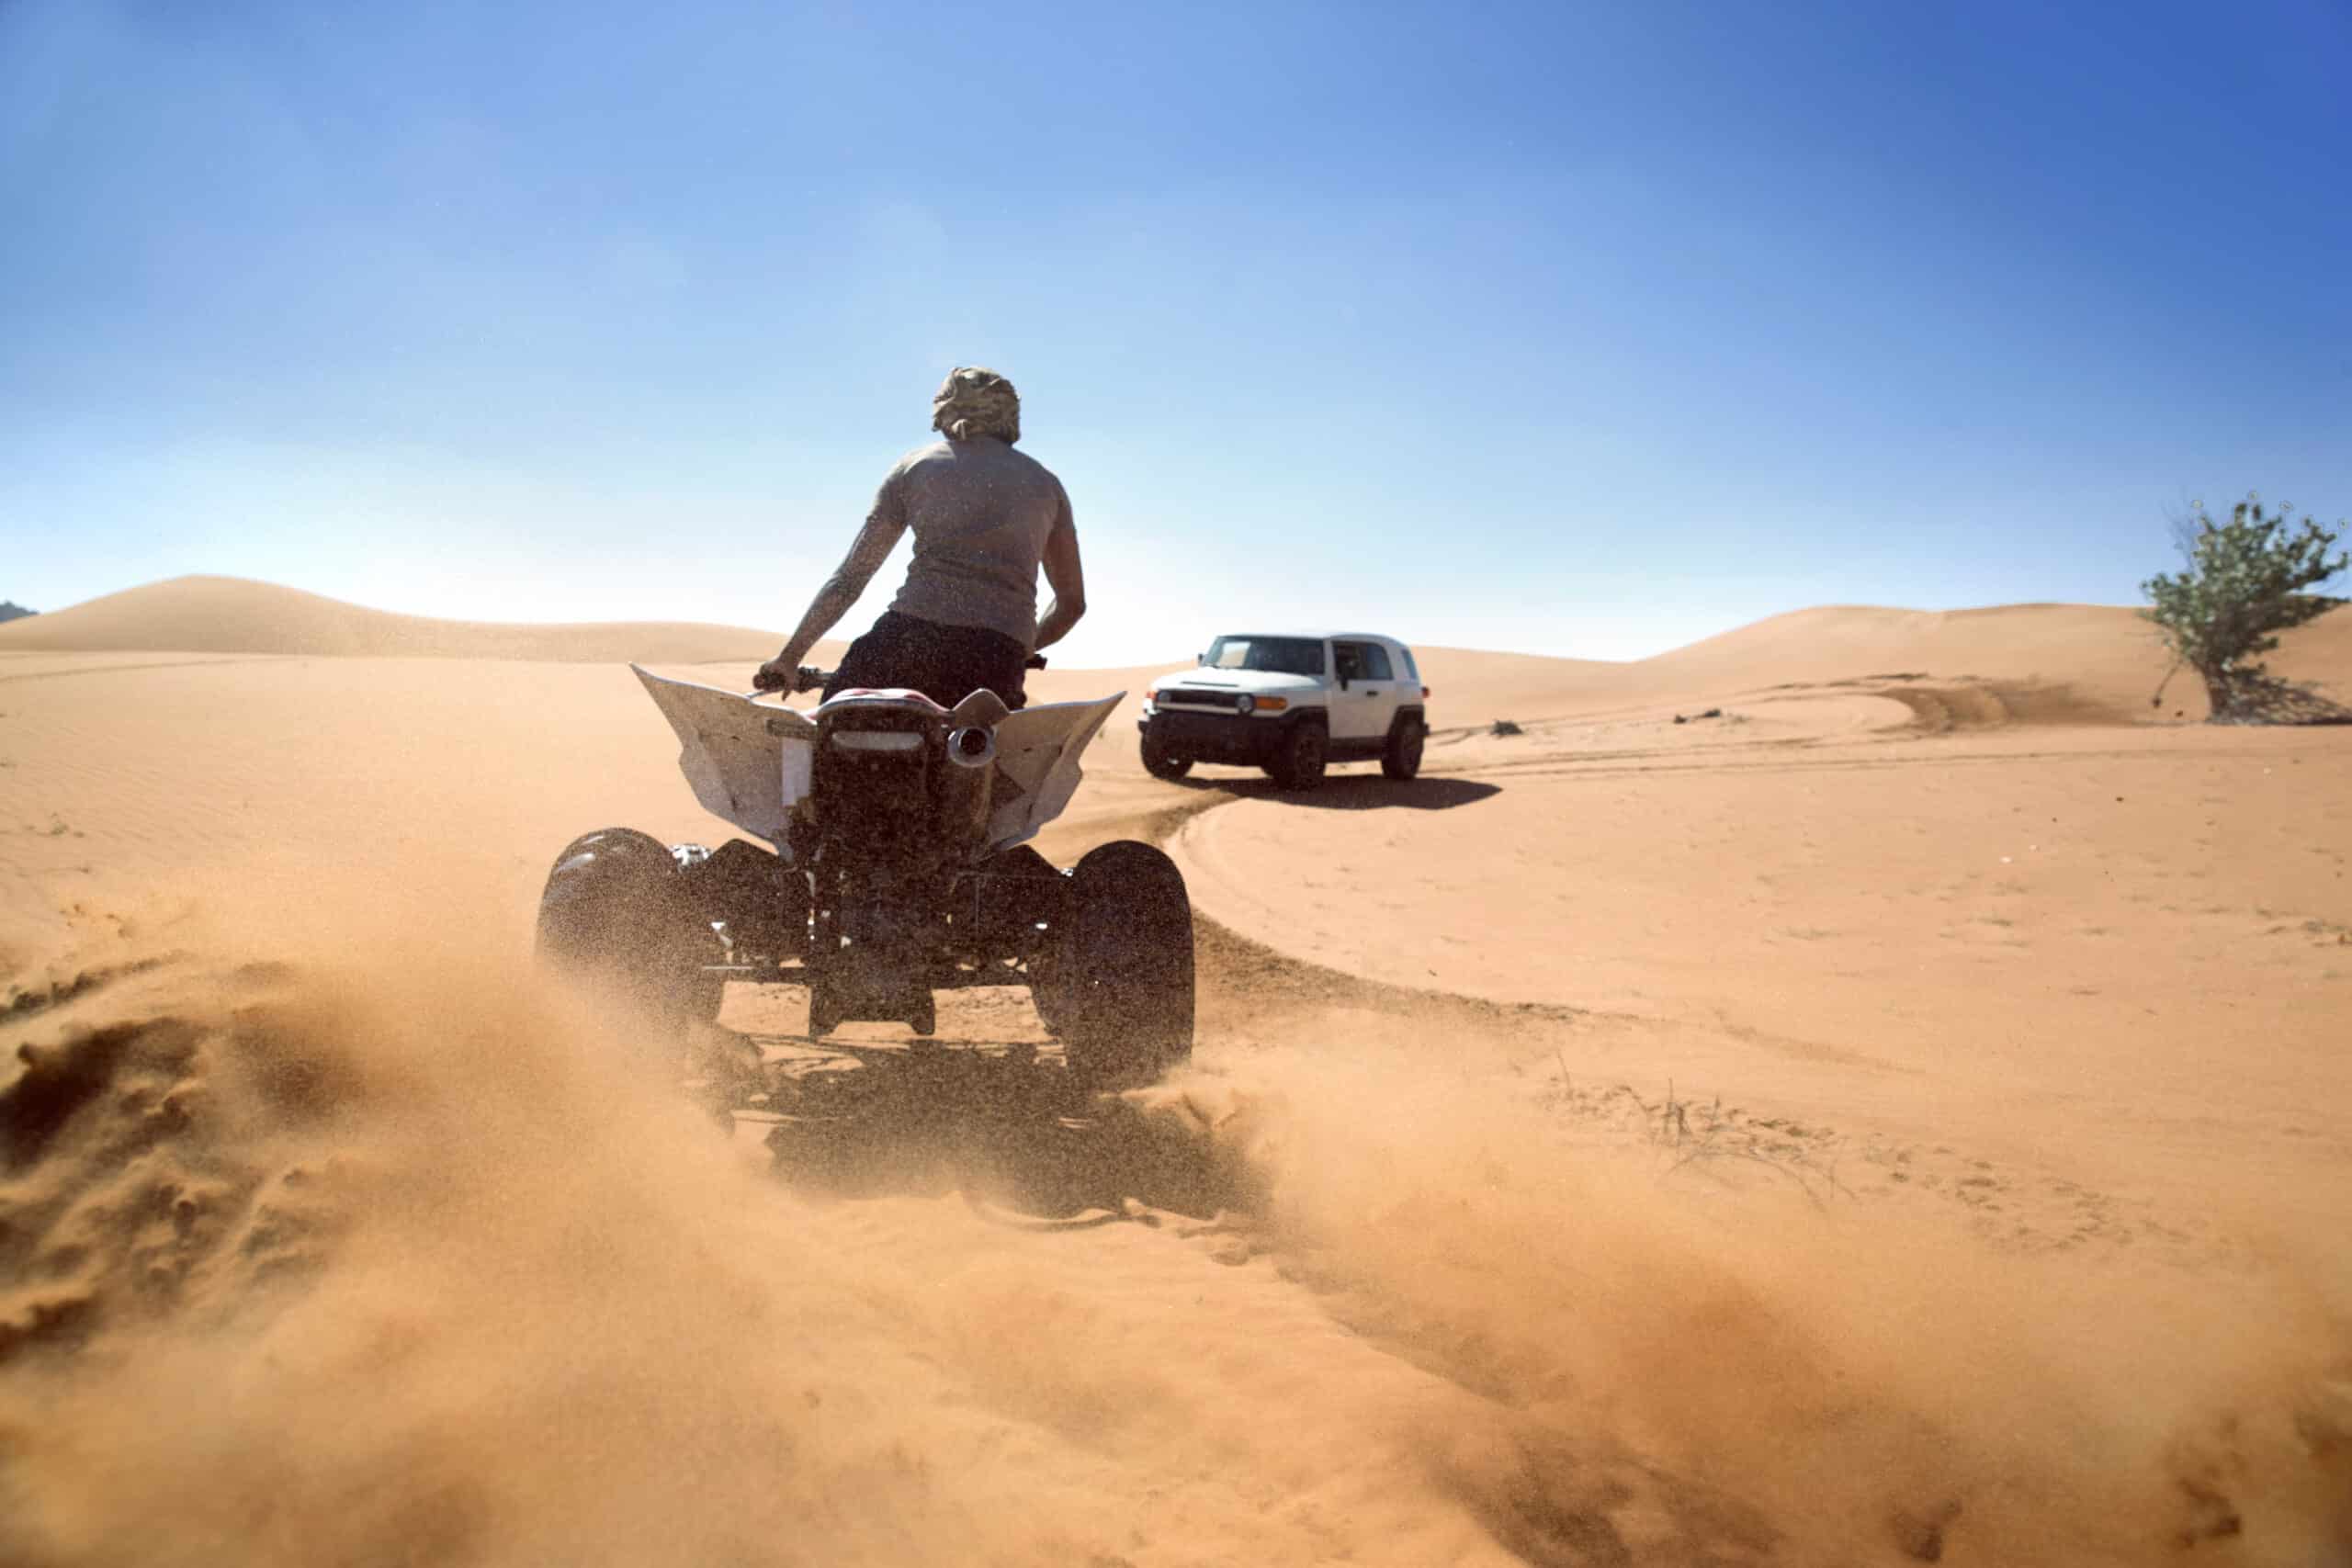 Eine Person fährt mit einem Geländefahrzeug durch die Wüste und wirbelt Sand auf. Im Hintergrund sind unter einem klaren Himmel zwei Allradfahrzeuge zu sehen. © Fotografie Tomas Rodriguez